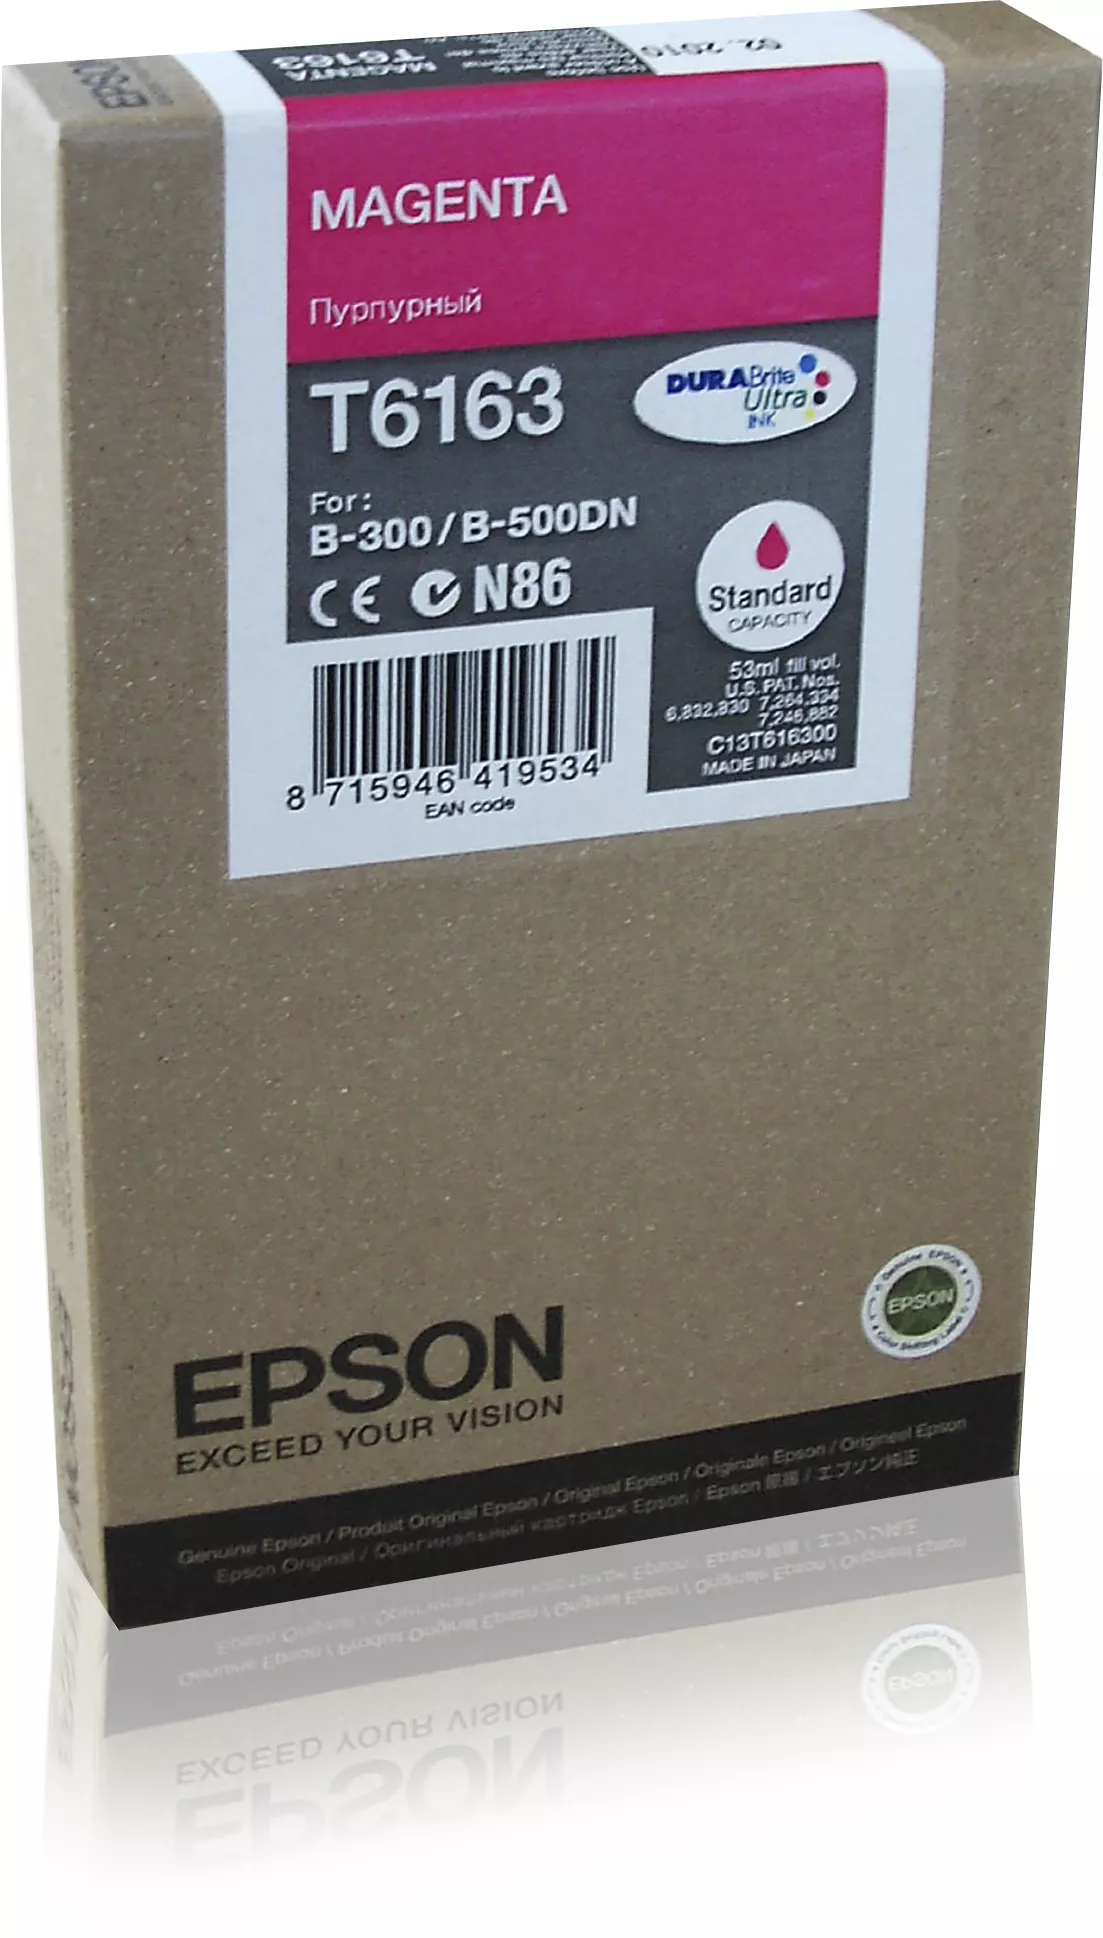 Achat EPSON T6163 cartouche de encre magenta capacité standard - 8715946419534